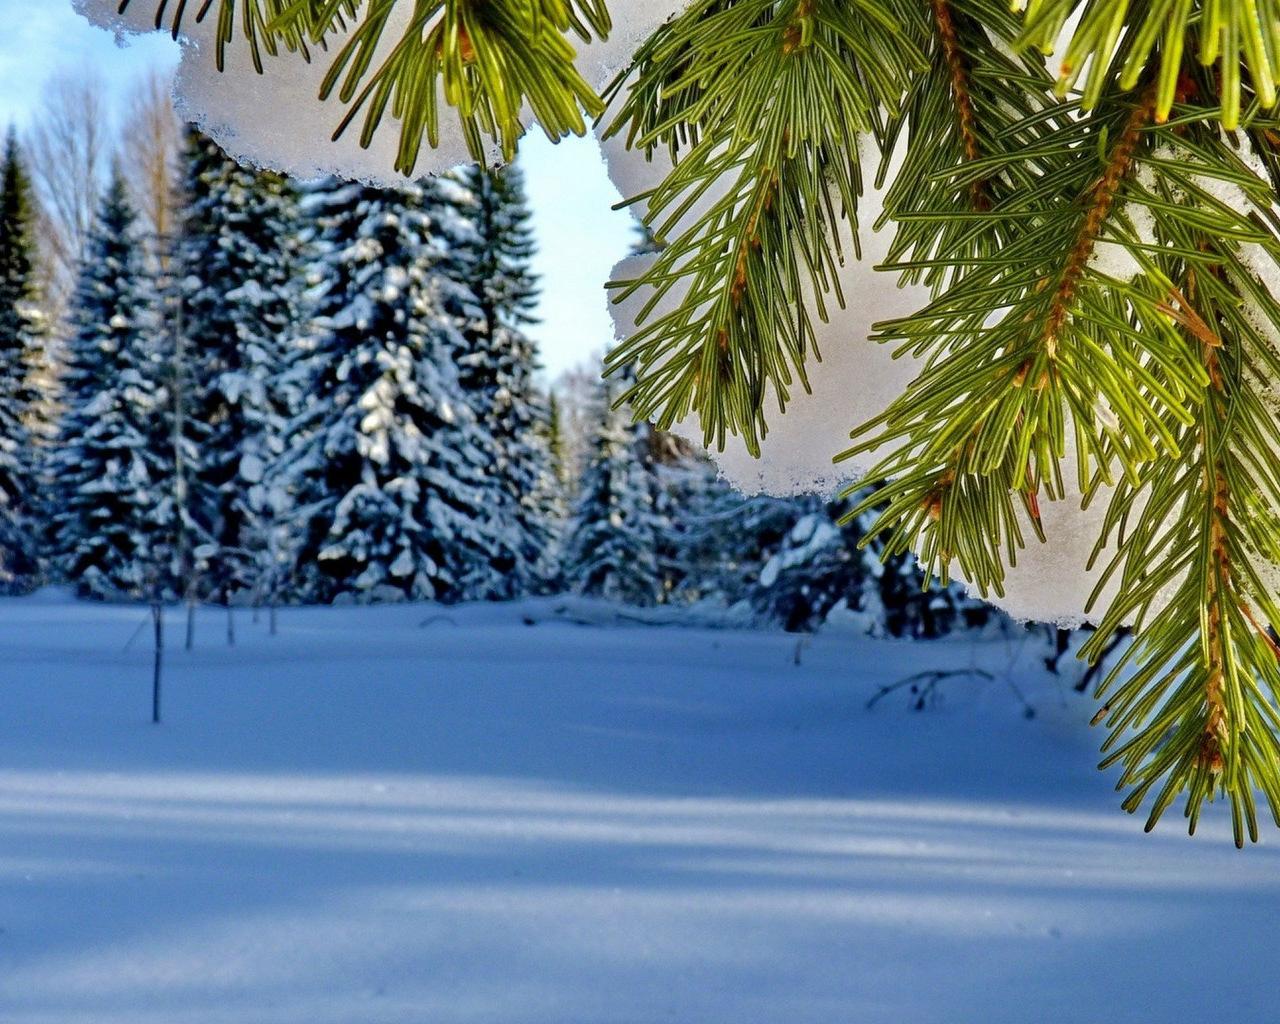 Обои на рабочий стол: Зима, Домик, Вечер, Снег, Деревья, Природа - скачать  картинку на ПК бесплатно № 67118